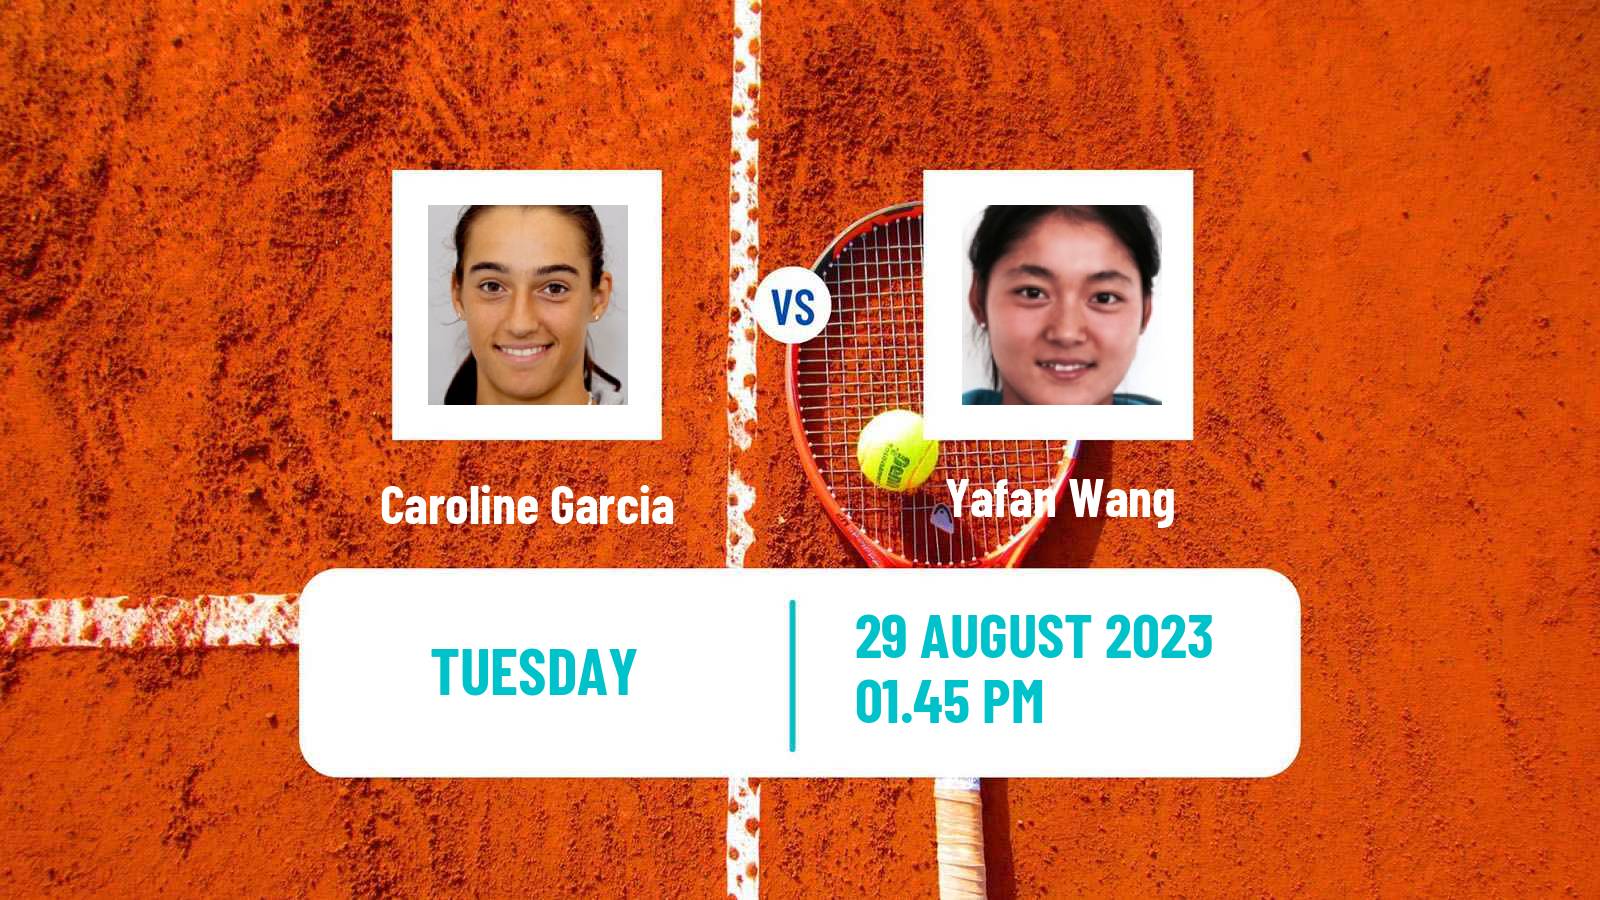 Tennis WTA US Open Caroline Garcia - Yafan Wang